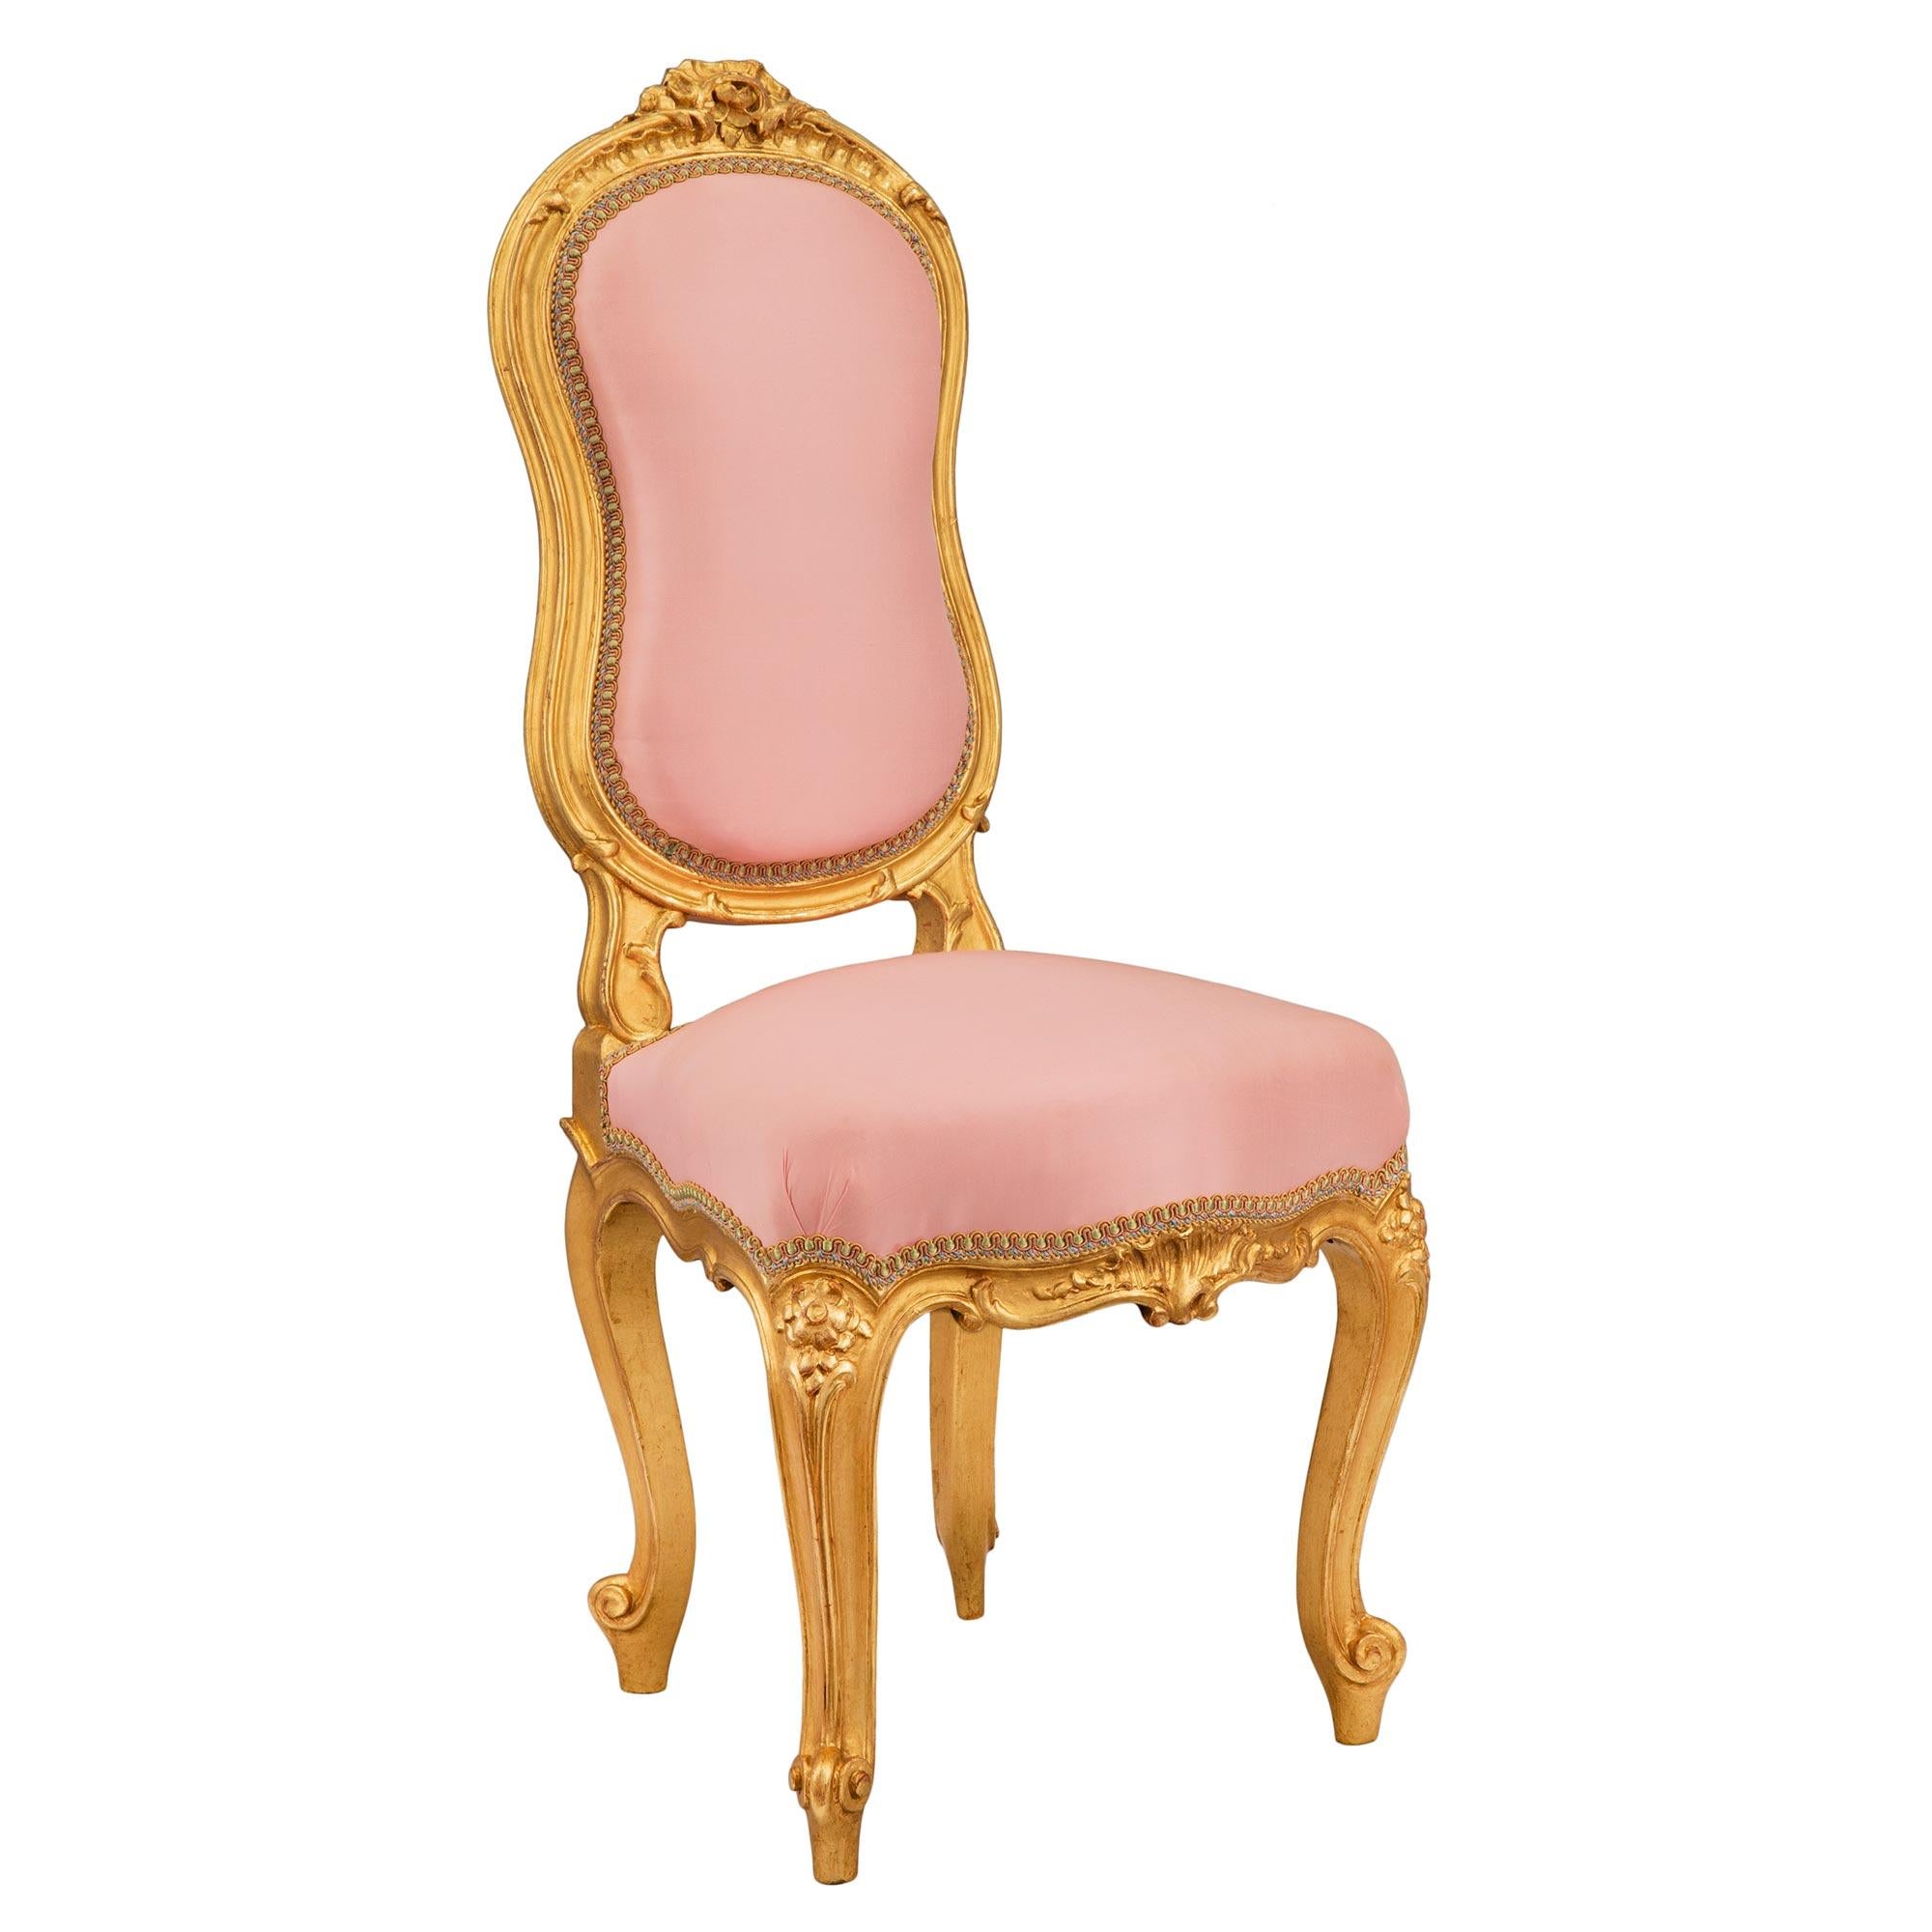 Une très charmante chaise d'enfant française du 19ème siècle de style Louis XV. La chaise est surélevée par de fins pieds cabriole avec d'élégants pieds à volutes. Au-dessus de chaque pied se trouve une belle sculpture feuillagée, centrée par une